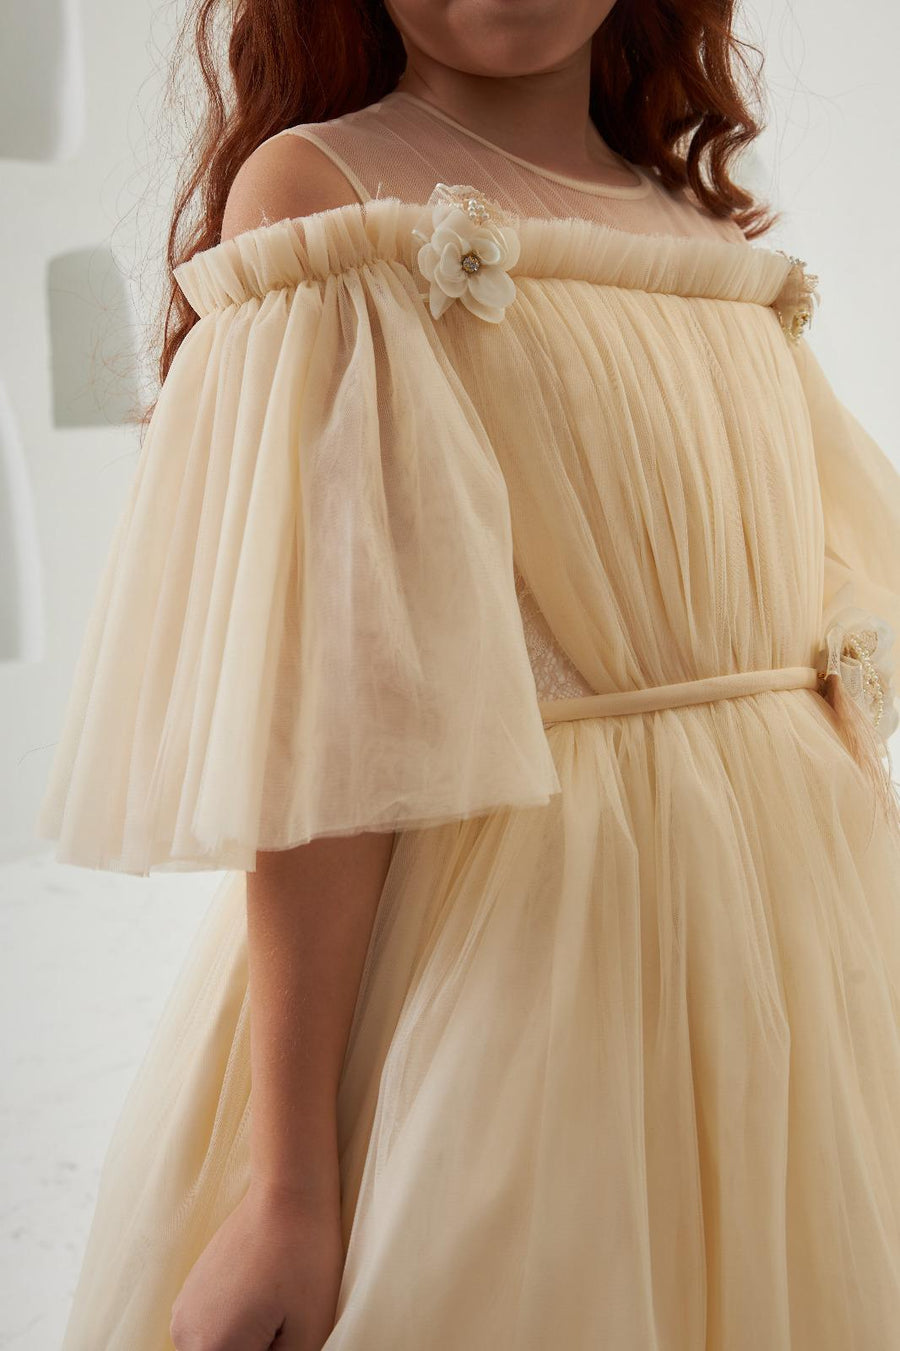 Pretty Lovely Elegant Ivory Dress 2308